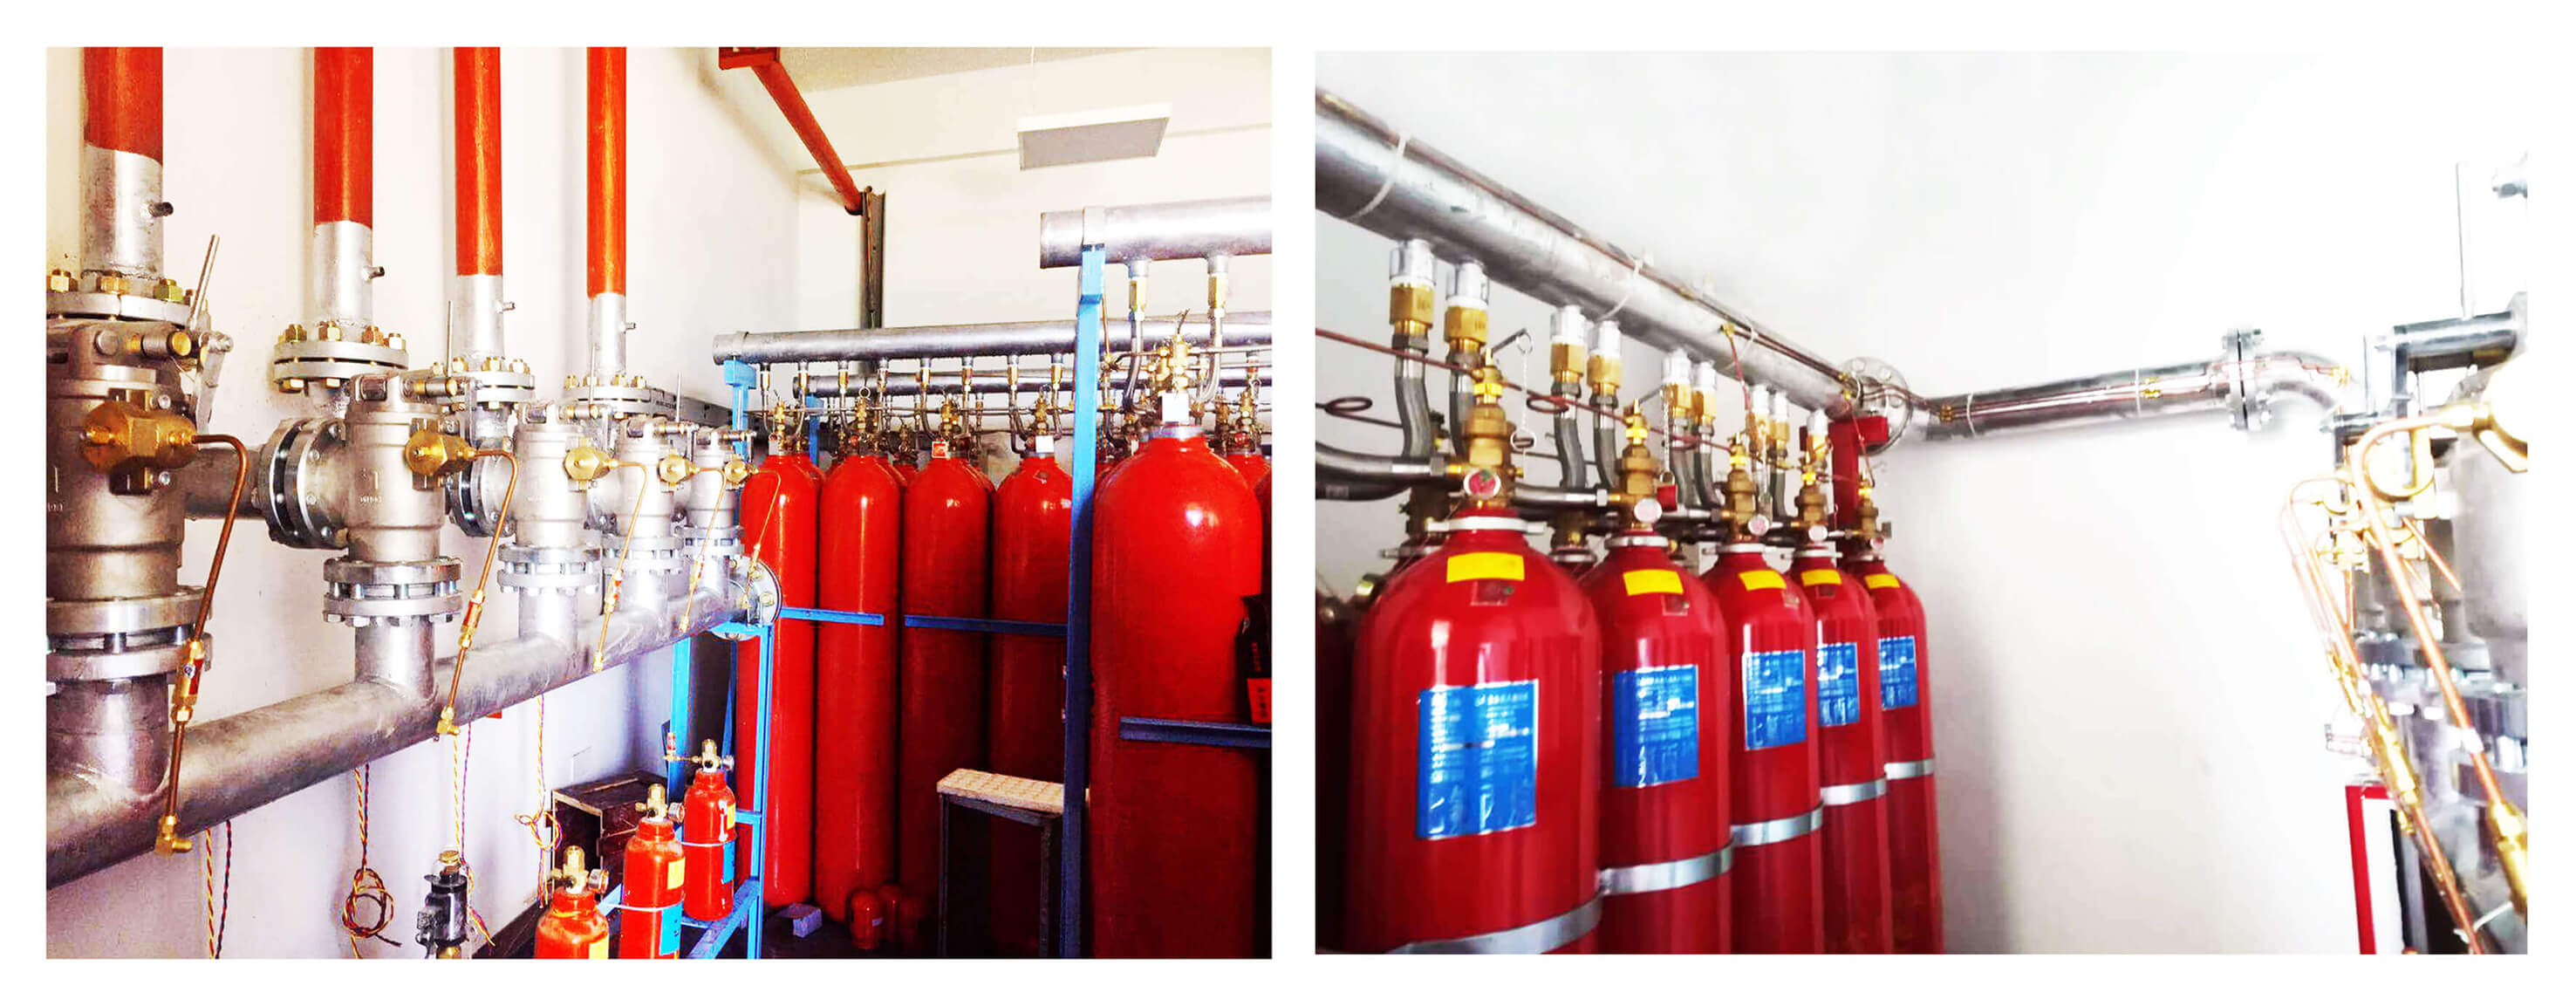 七氟丙烷灭火设备、柜式七氟丙烷气体灭火装置安装、调试、使用、维护